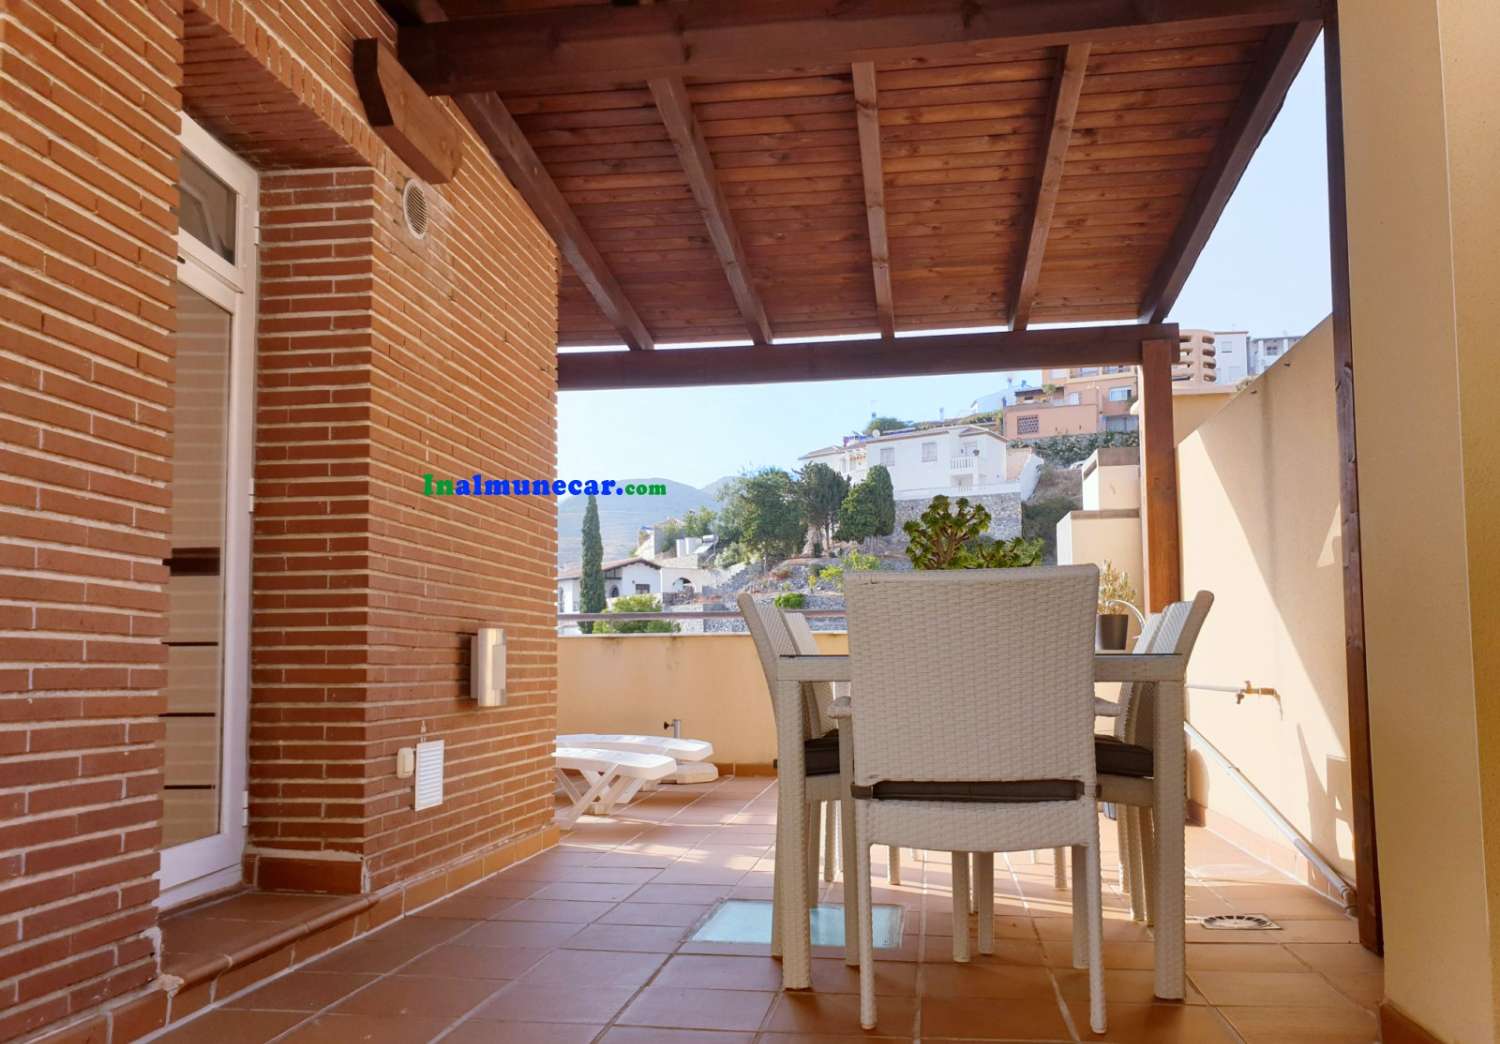 For sale in Almuñécar: luxury townhouse located in Cielos de Cotobro complex,